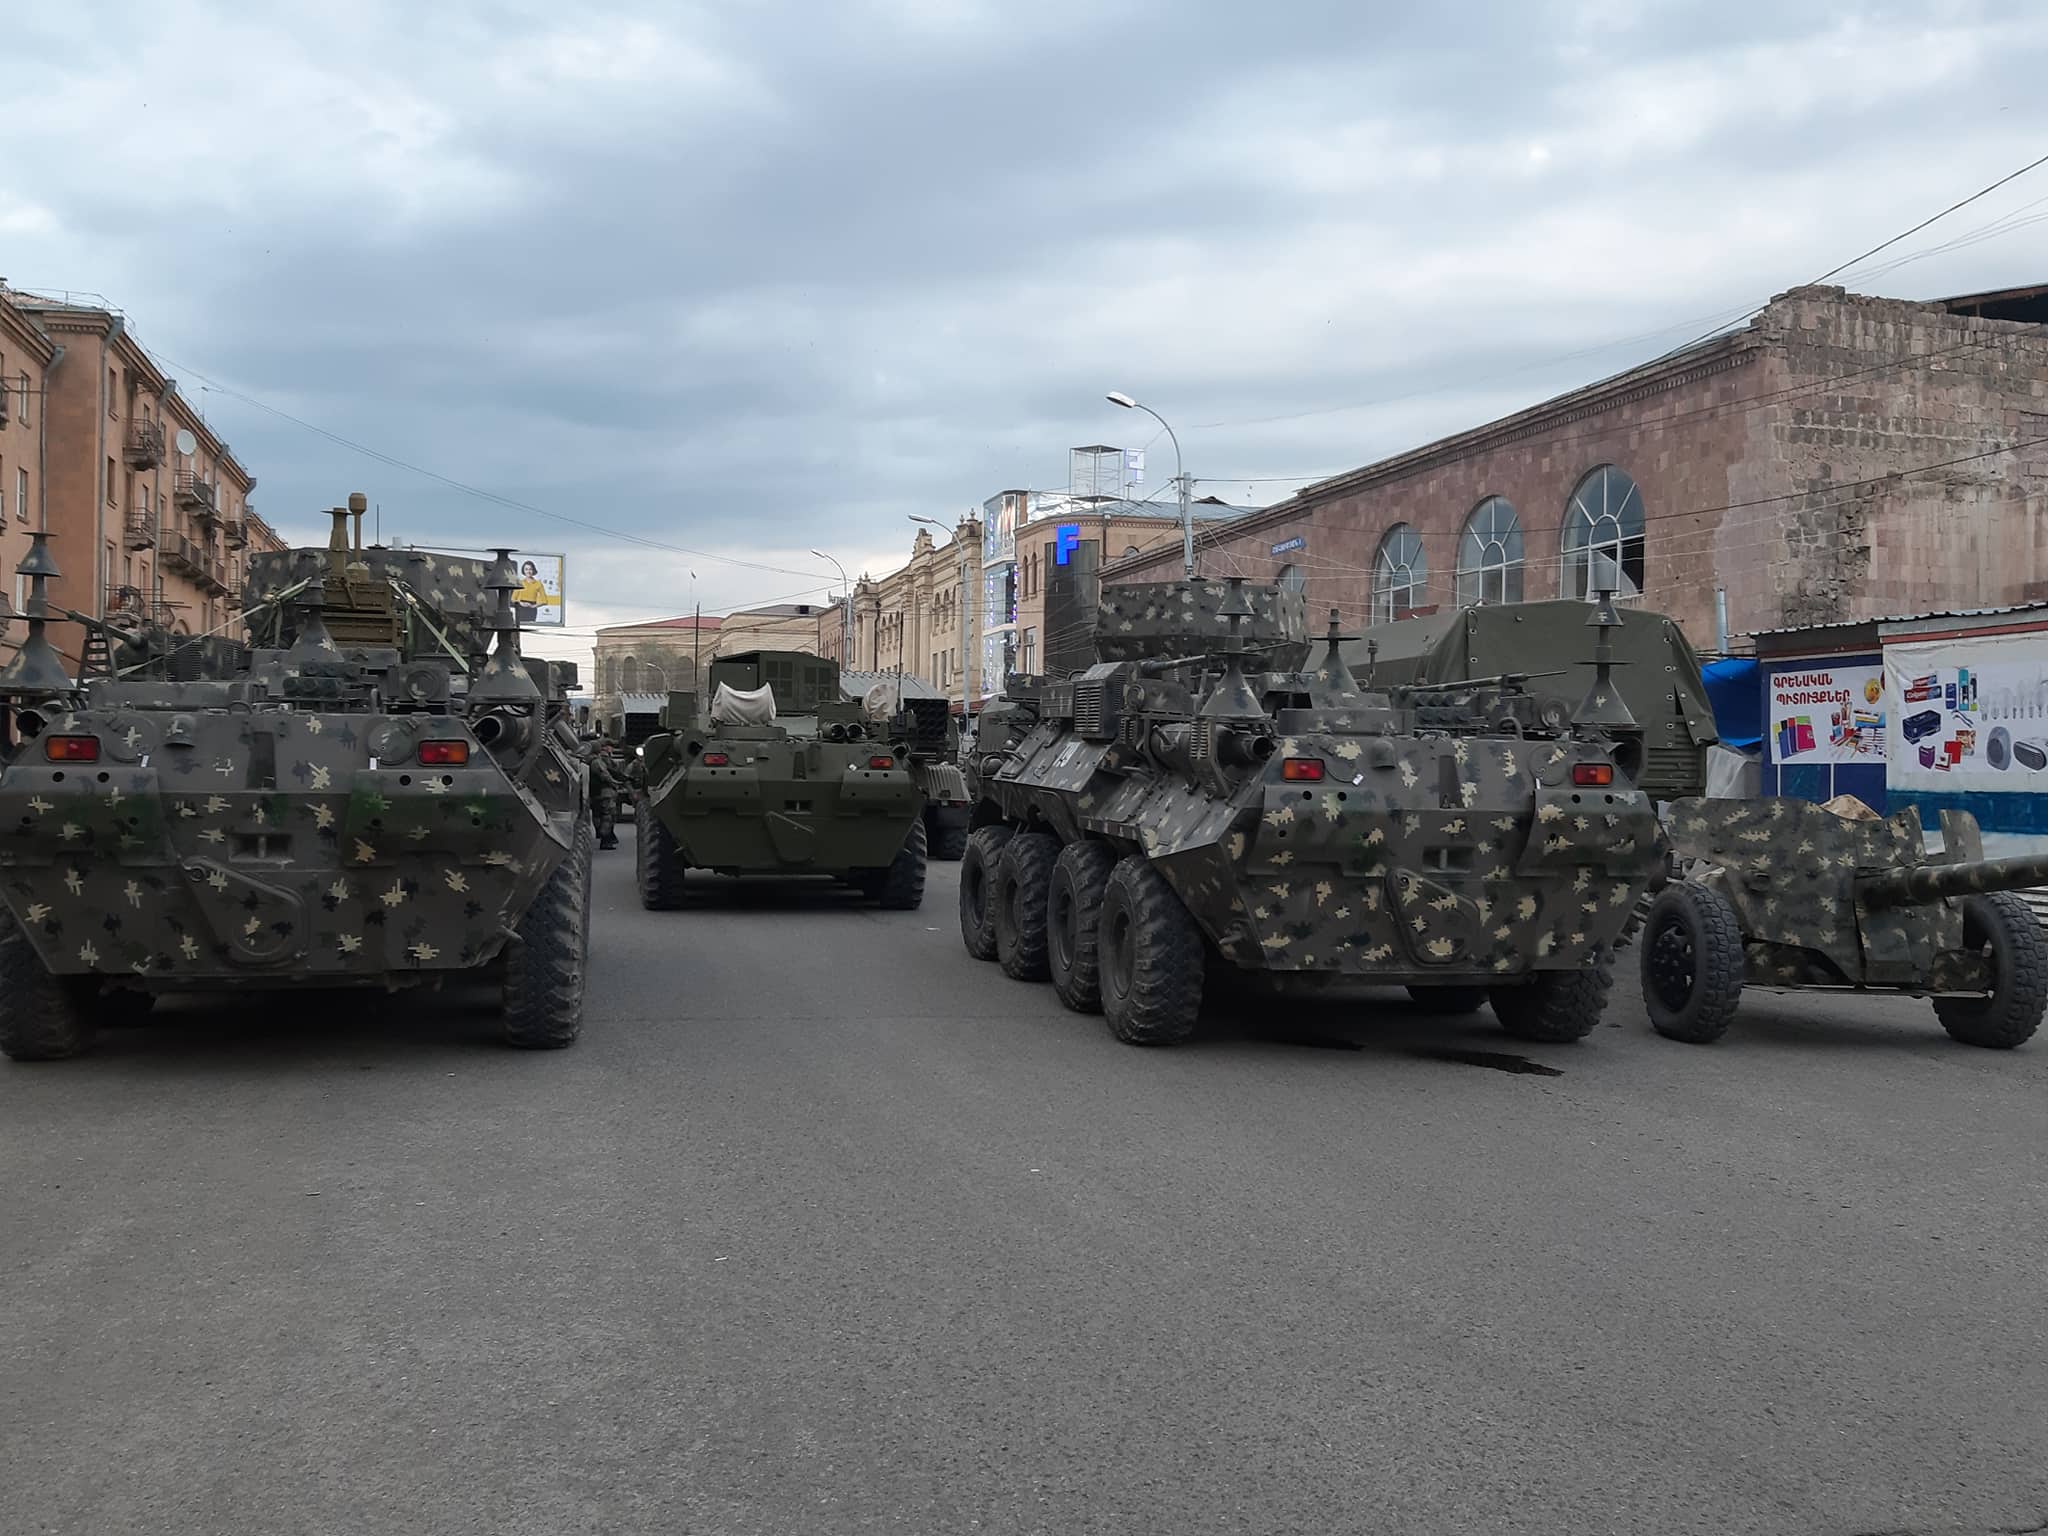 ՌԴ-ն բարձր մարտական պատրաստության վիճակի է բերել իր զորքերը.Վրաստանի դեմ օգտագործելը վտանգավոր է ՀՀ-ի համար.«Ժամանակ»